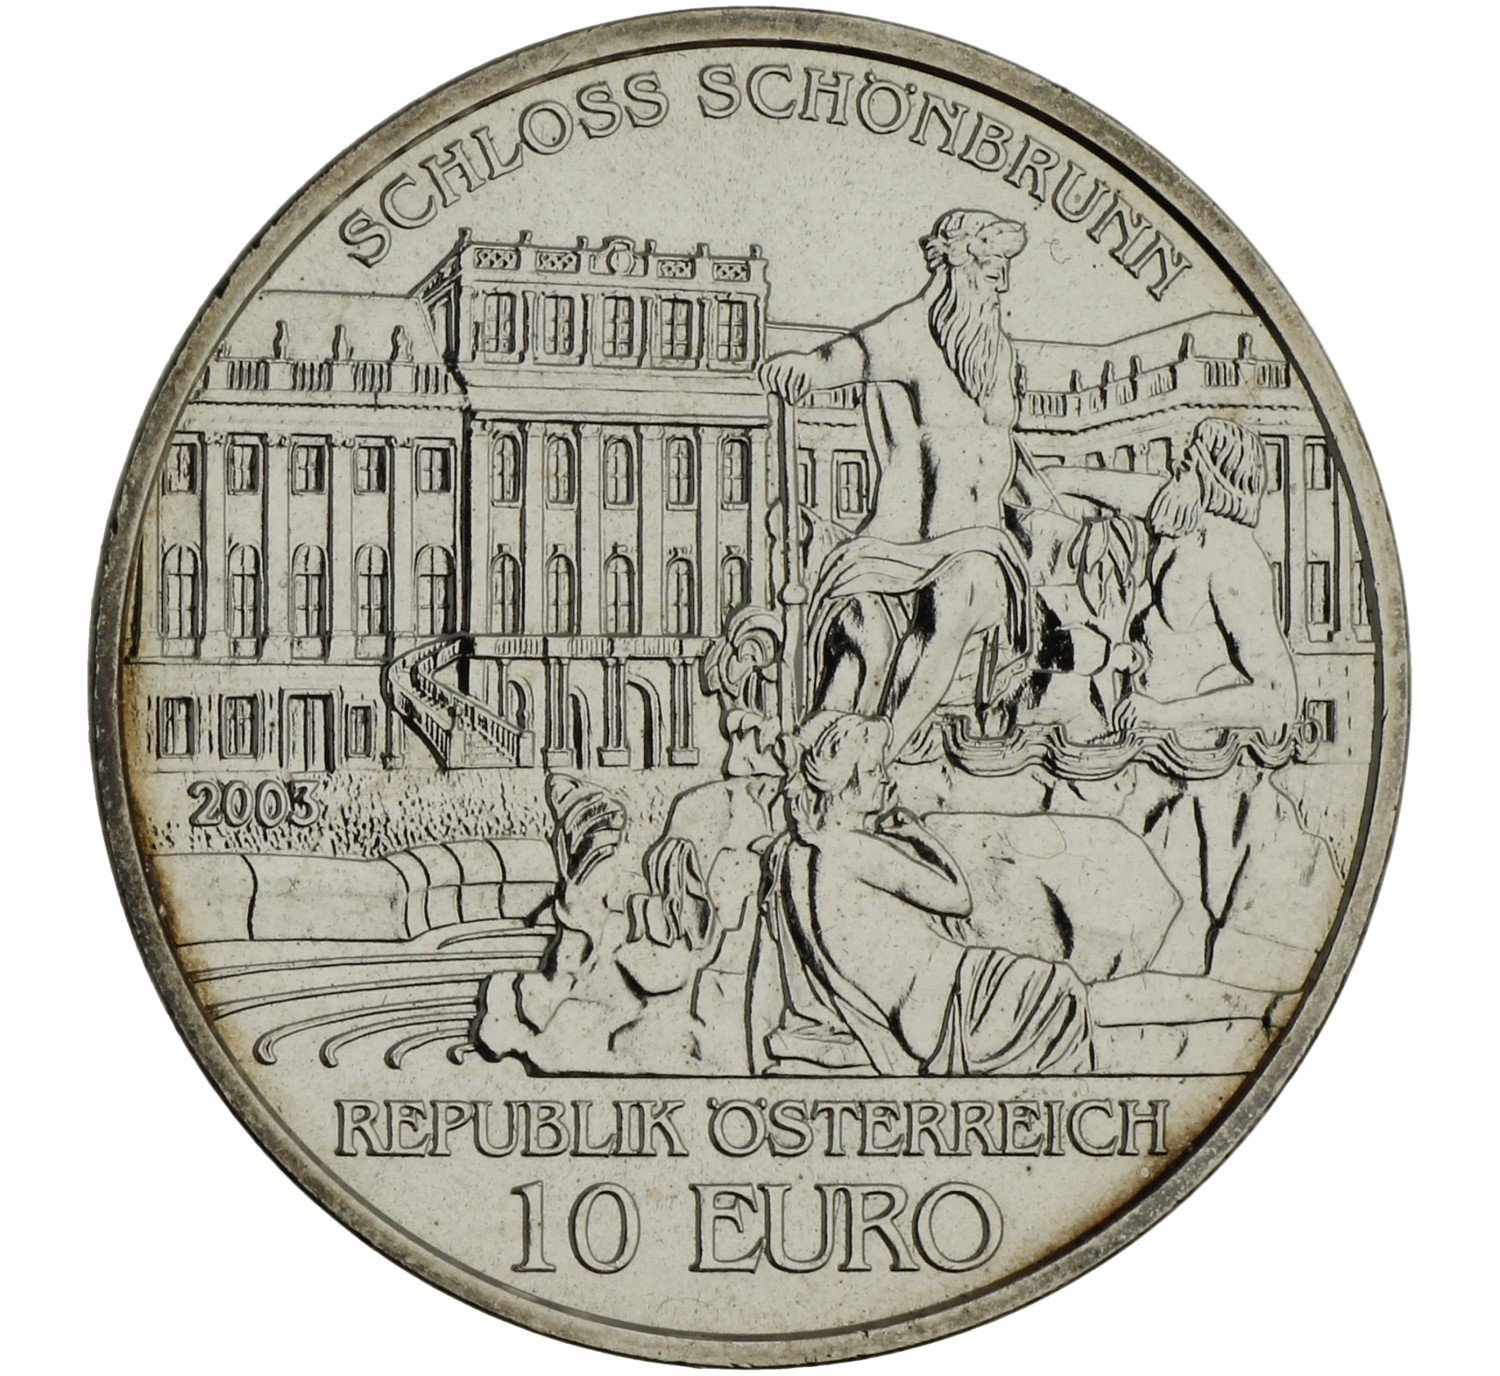 10 Euro - Austria - 2003